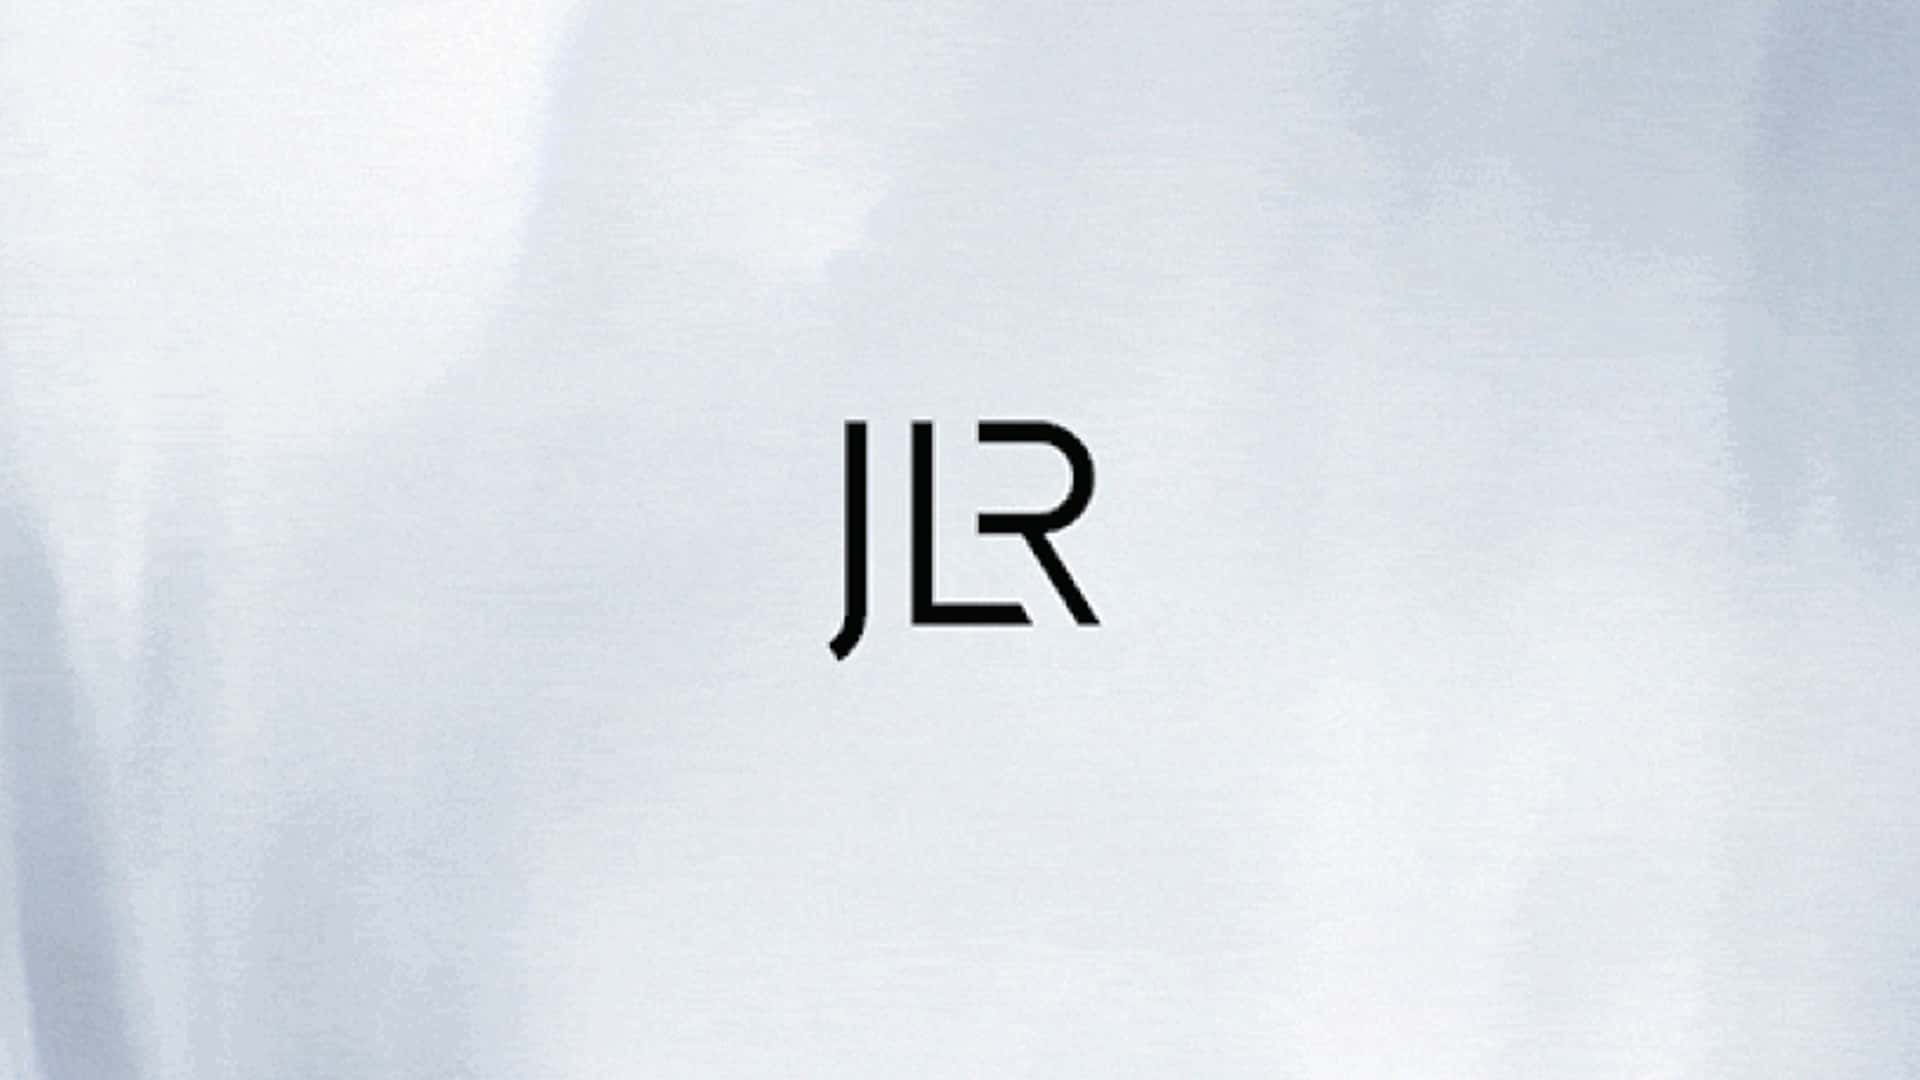 Компания Jaguar Land Rover завершила официальный ребрендинг с новым названием JLR и логотипом